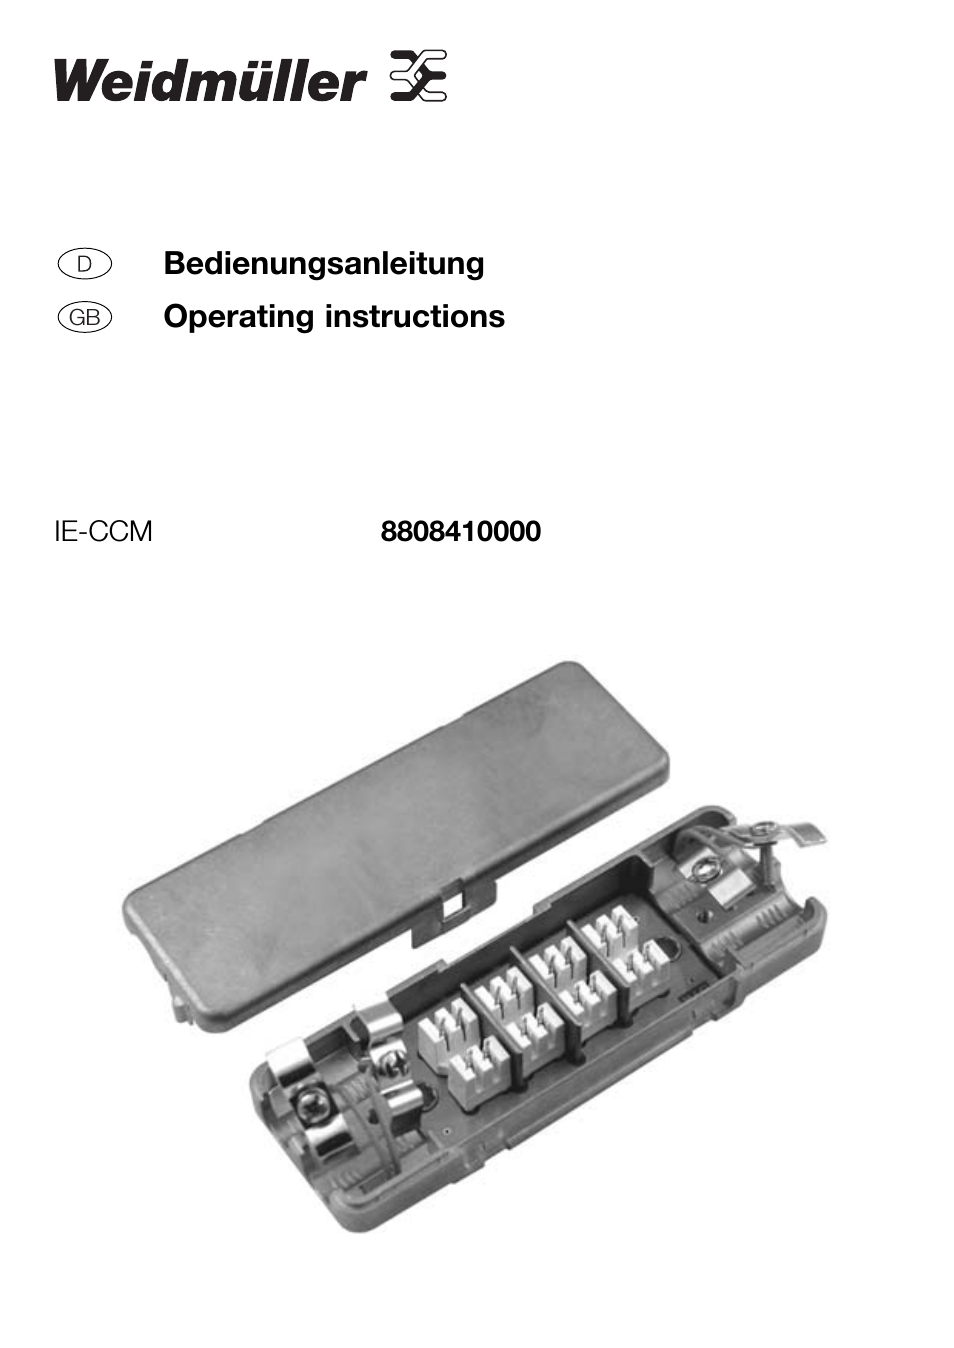 IE-CCM Cable Extension Module